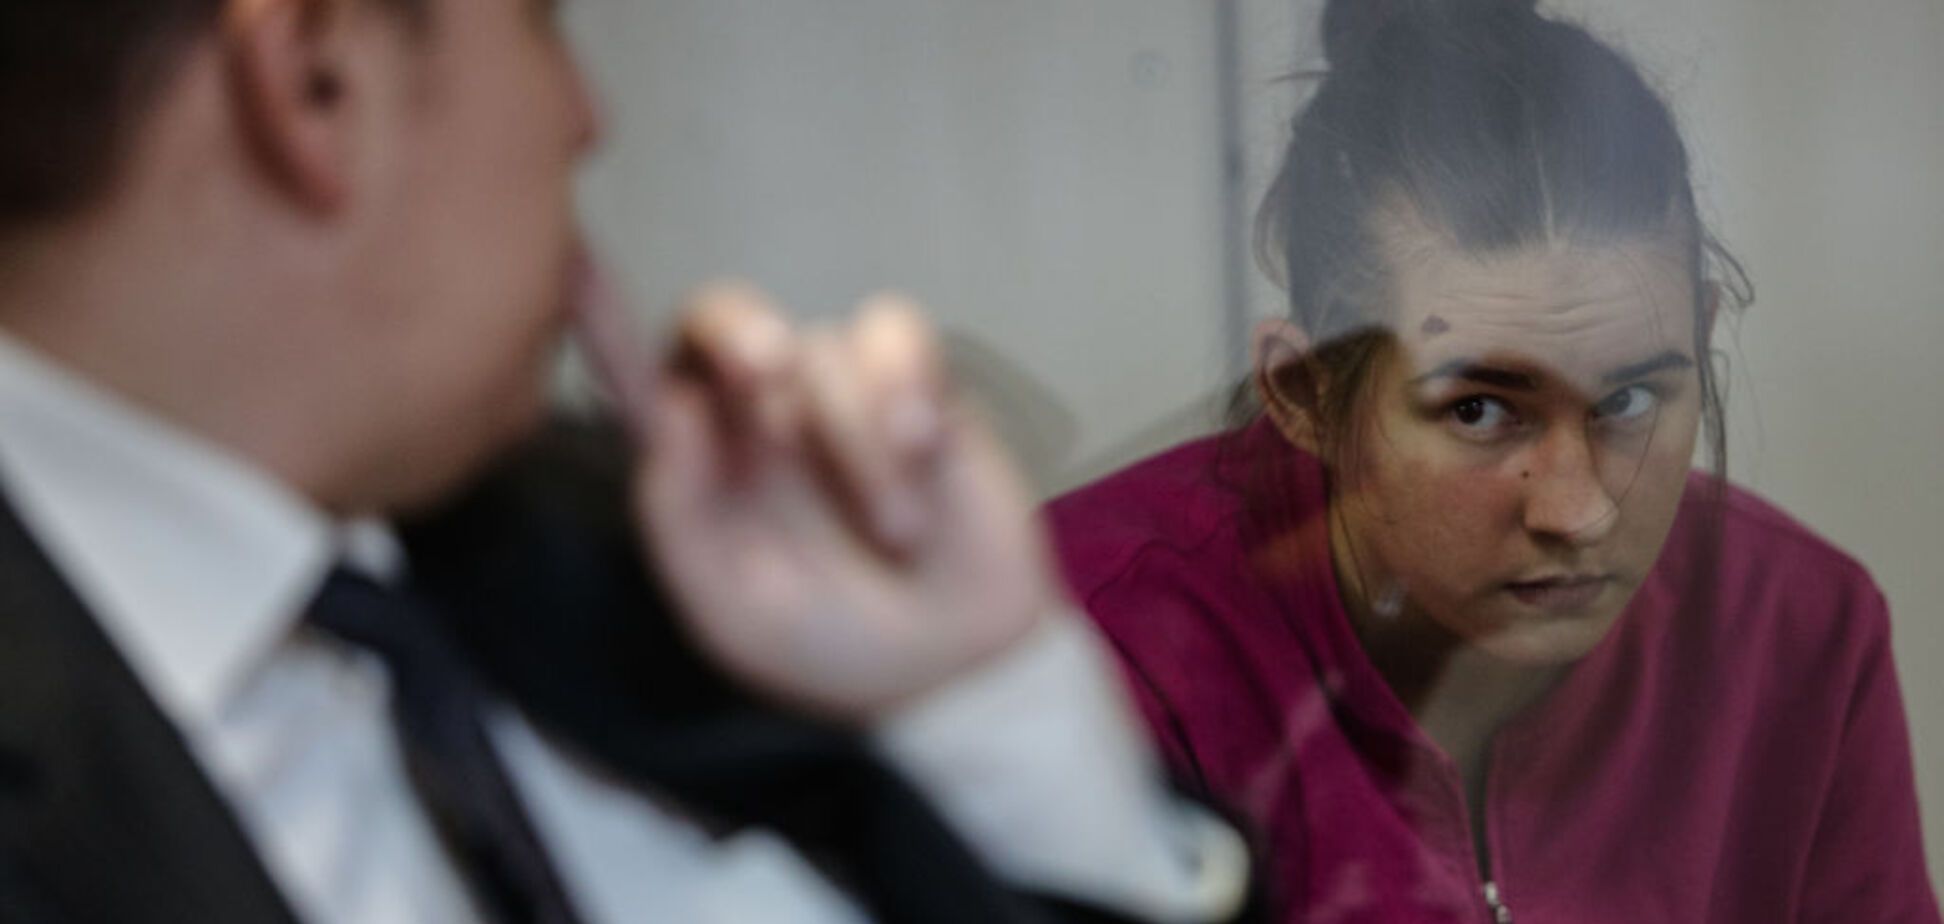 Жертва или преступница? Появился психологический портрет похитительницы младенца в Киеве